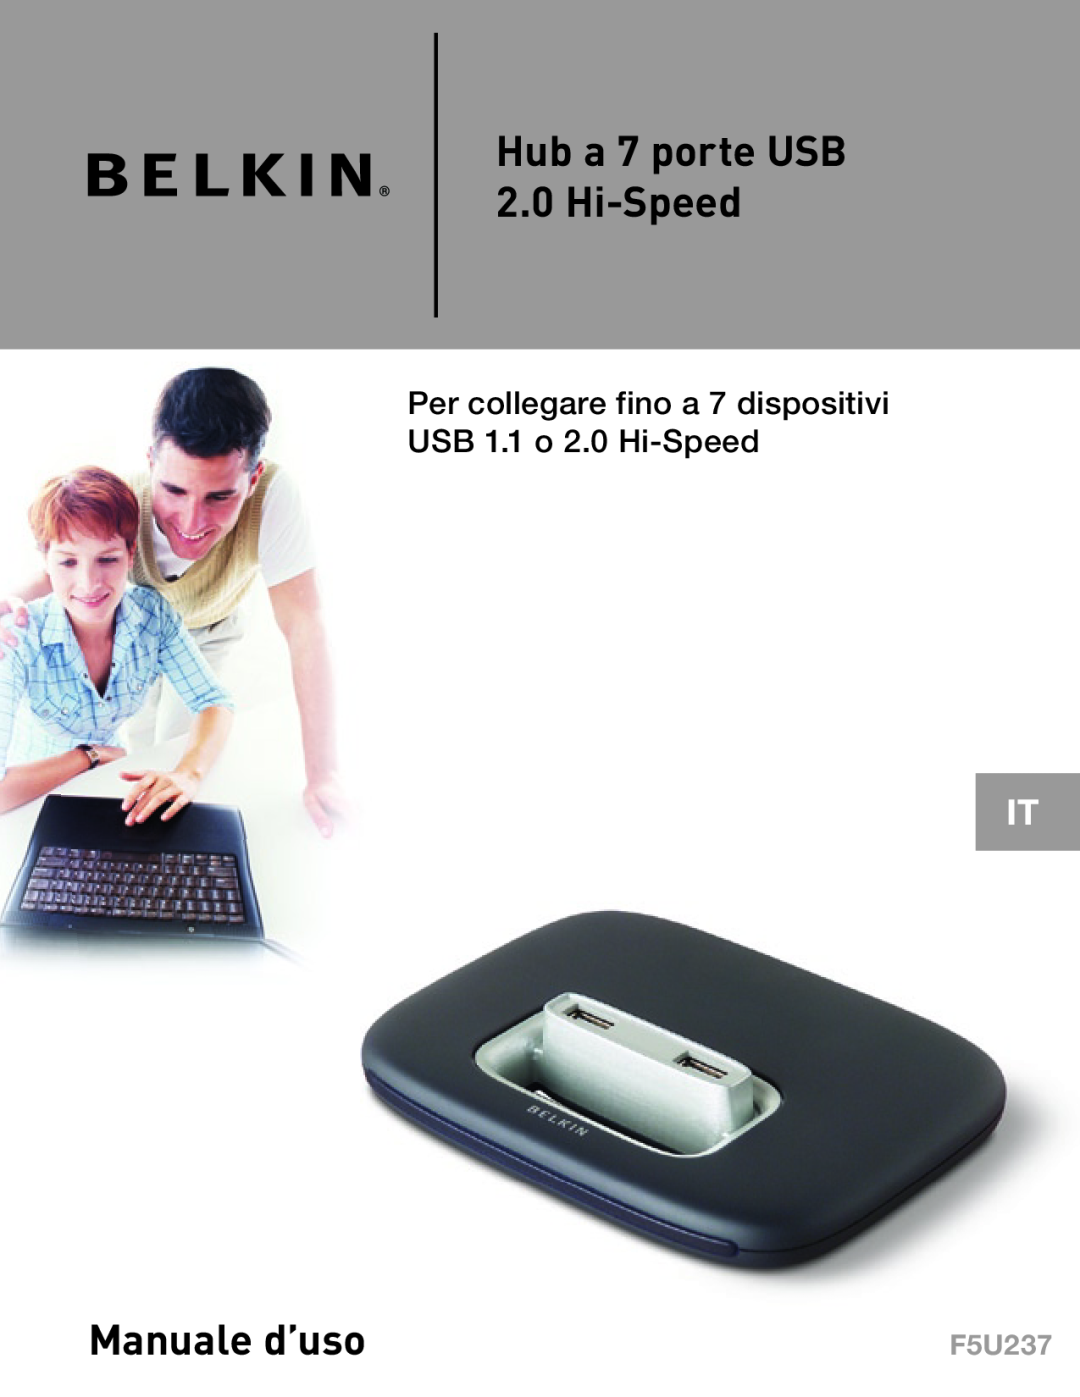 Belkin F5U237 Hub a 7 porte USB 2.0 Hi-Speed, Manuale d’uso, Per collegare fino a 7 dispositivi USB 1.1 o 2.0 Hi-Speed 